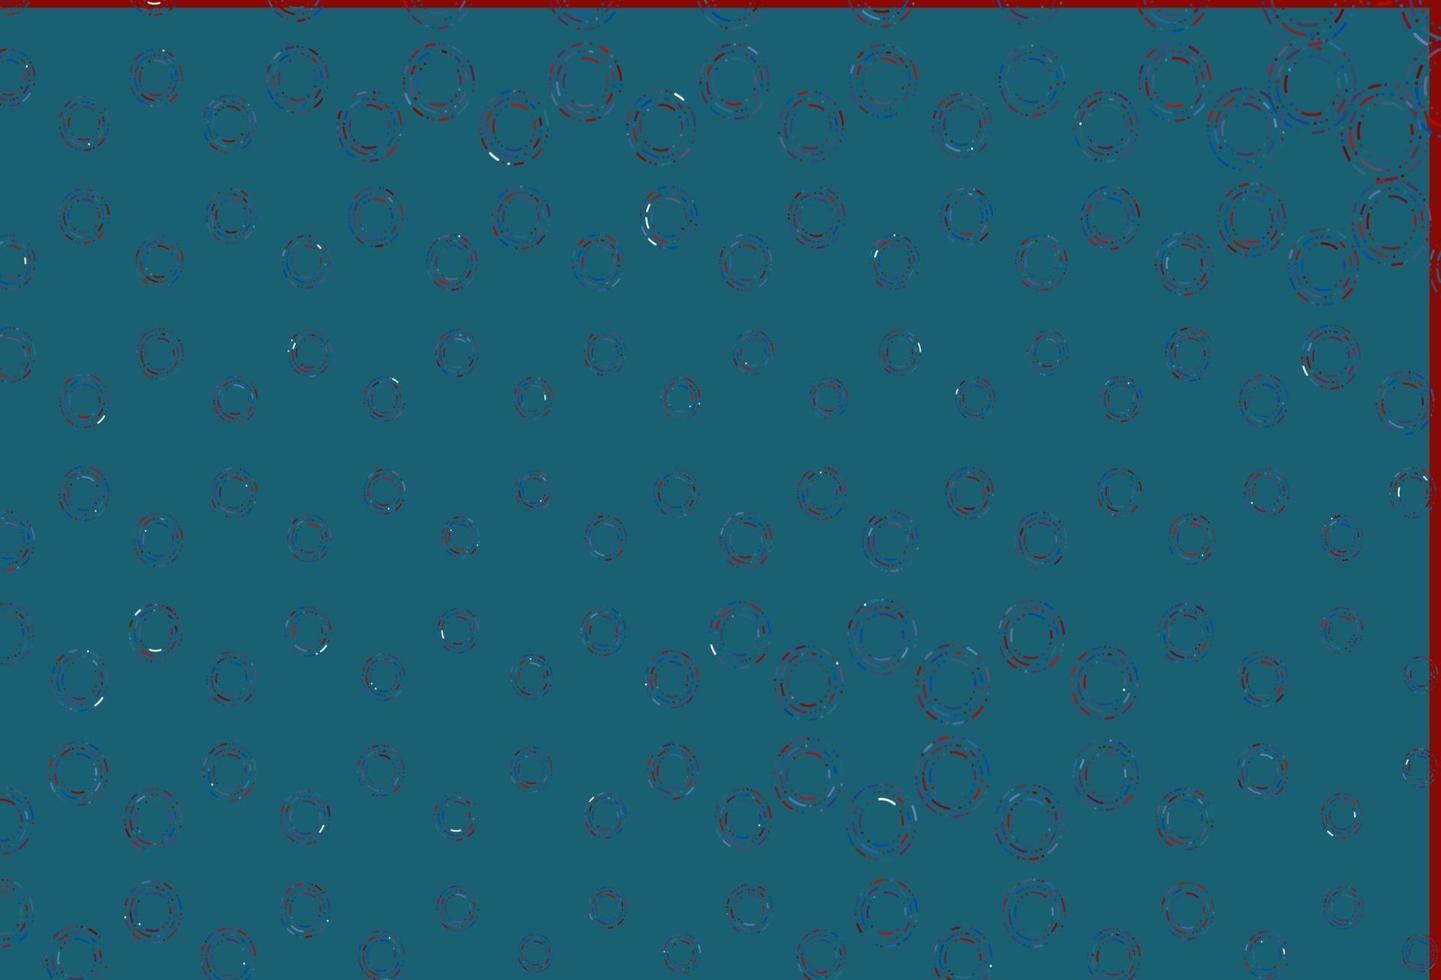 lichtblauw, rood vector sjabloon met cirkels.